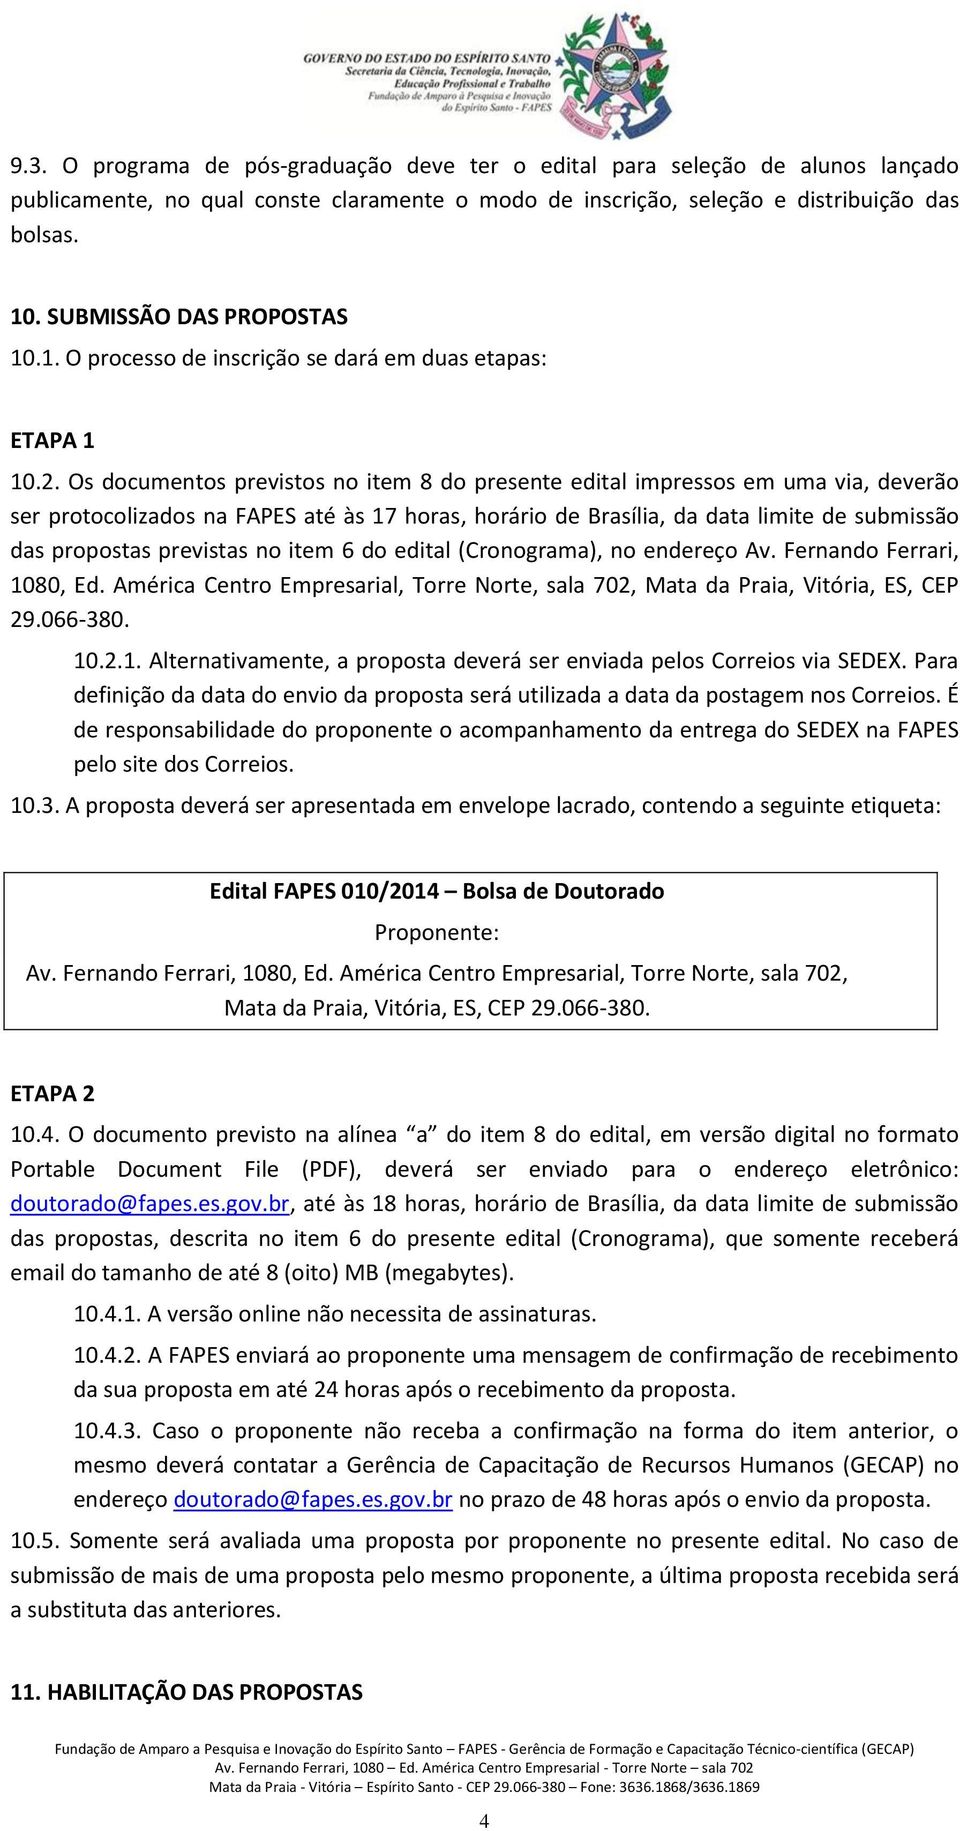 Os documentos previstos no item 8 do presente edital impressos em uma via, deverão ser protocolizados na FAPES até às 17 horas, horário de Brasília, da data limite de submissão das propostas